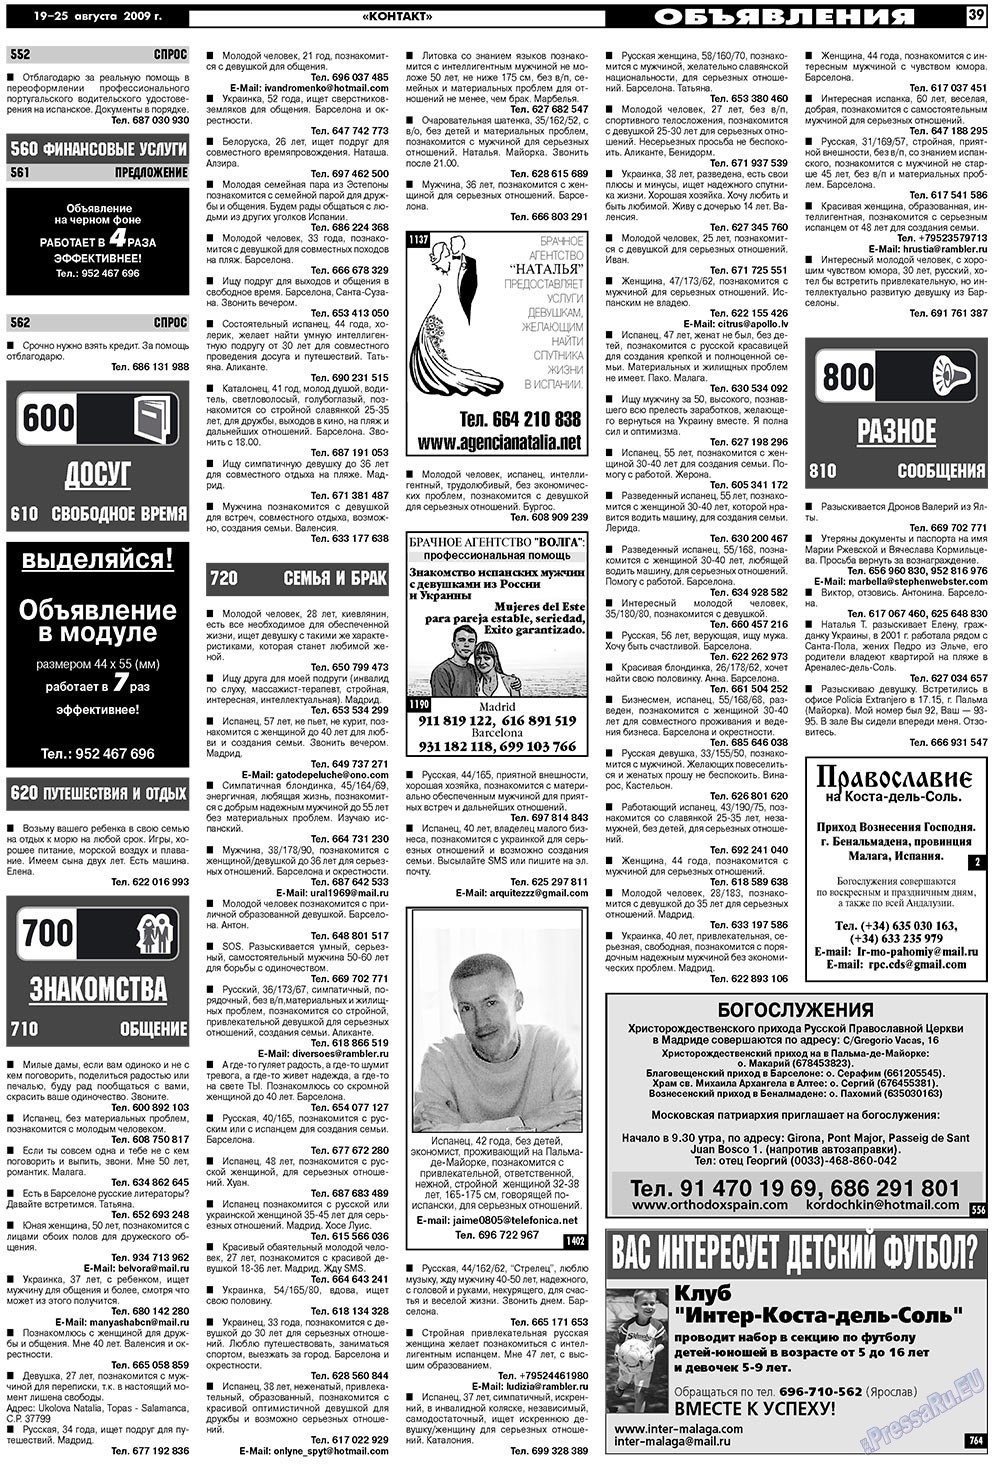 МК Испания, газета. 2009 №34 стр.39